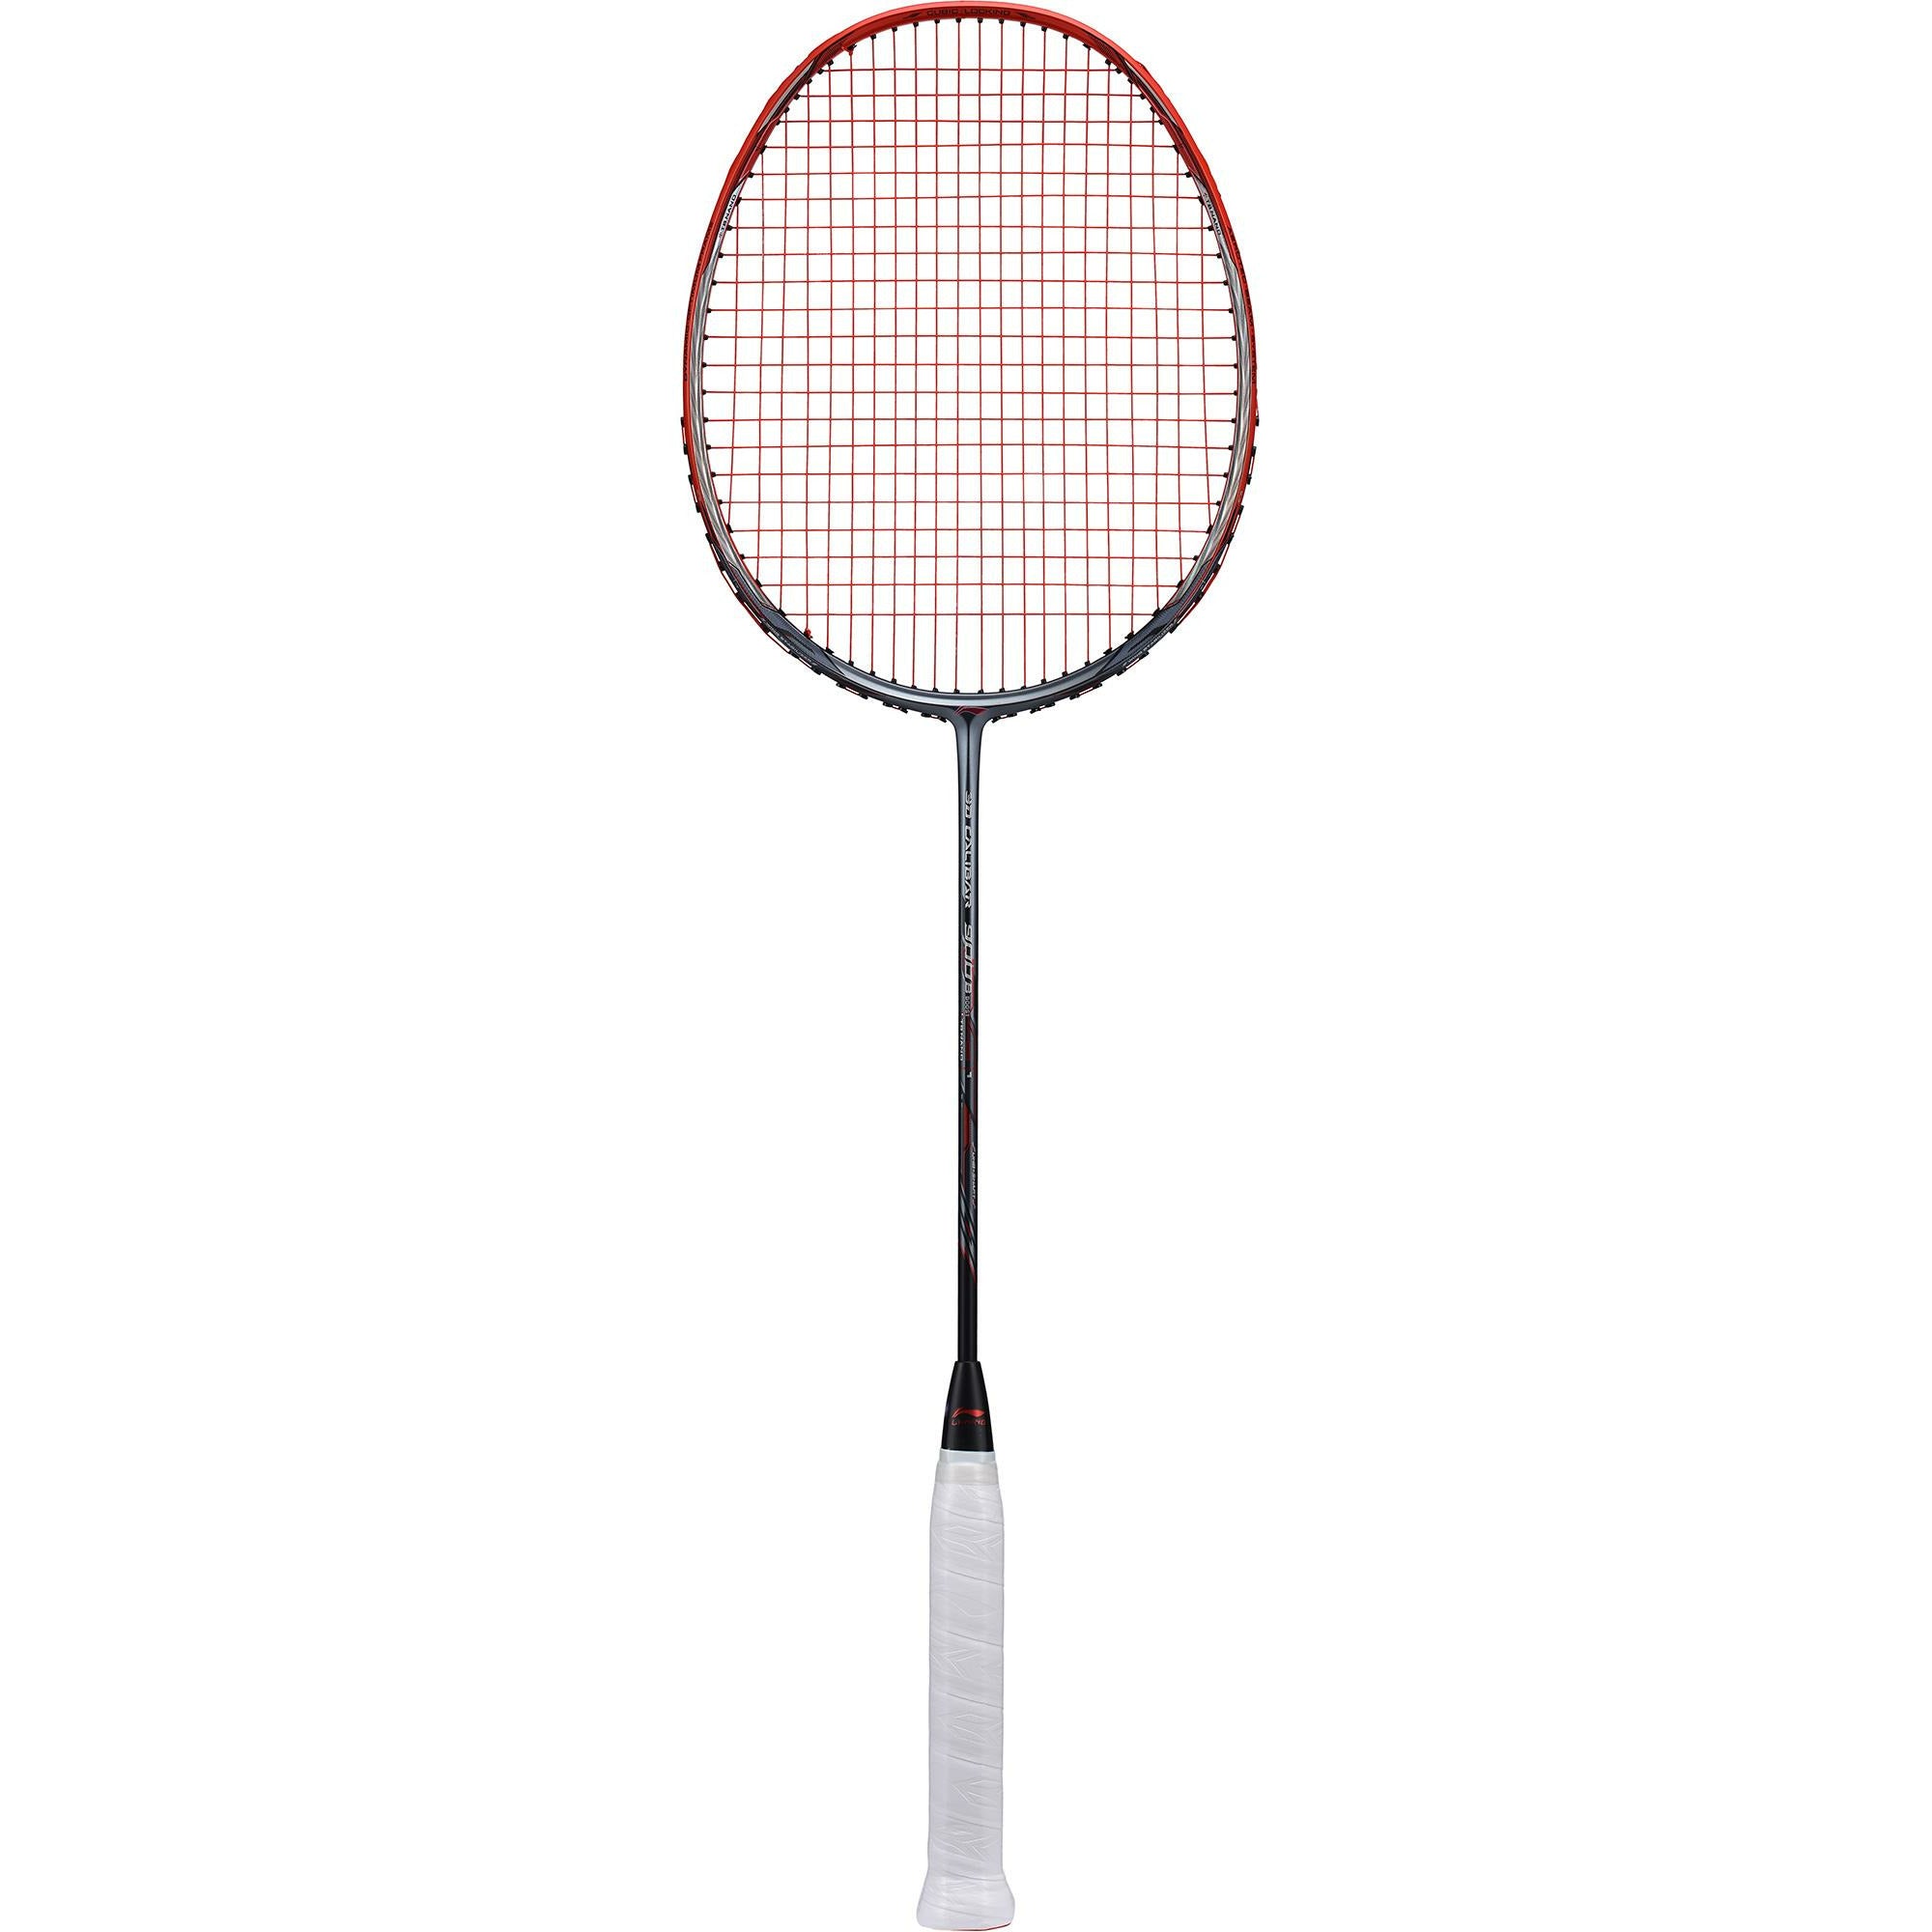 lining calibar 900 boost badminton racket